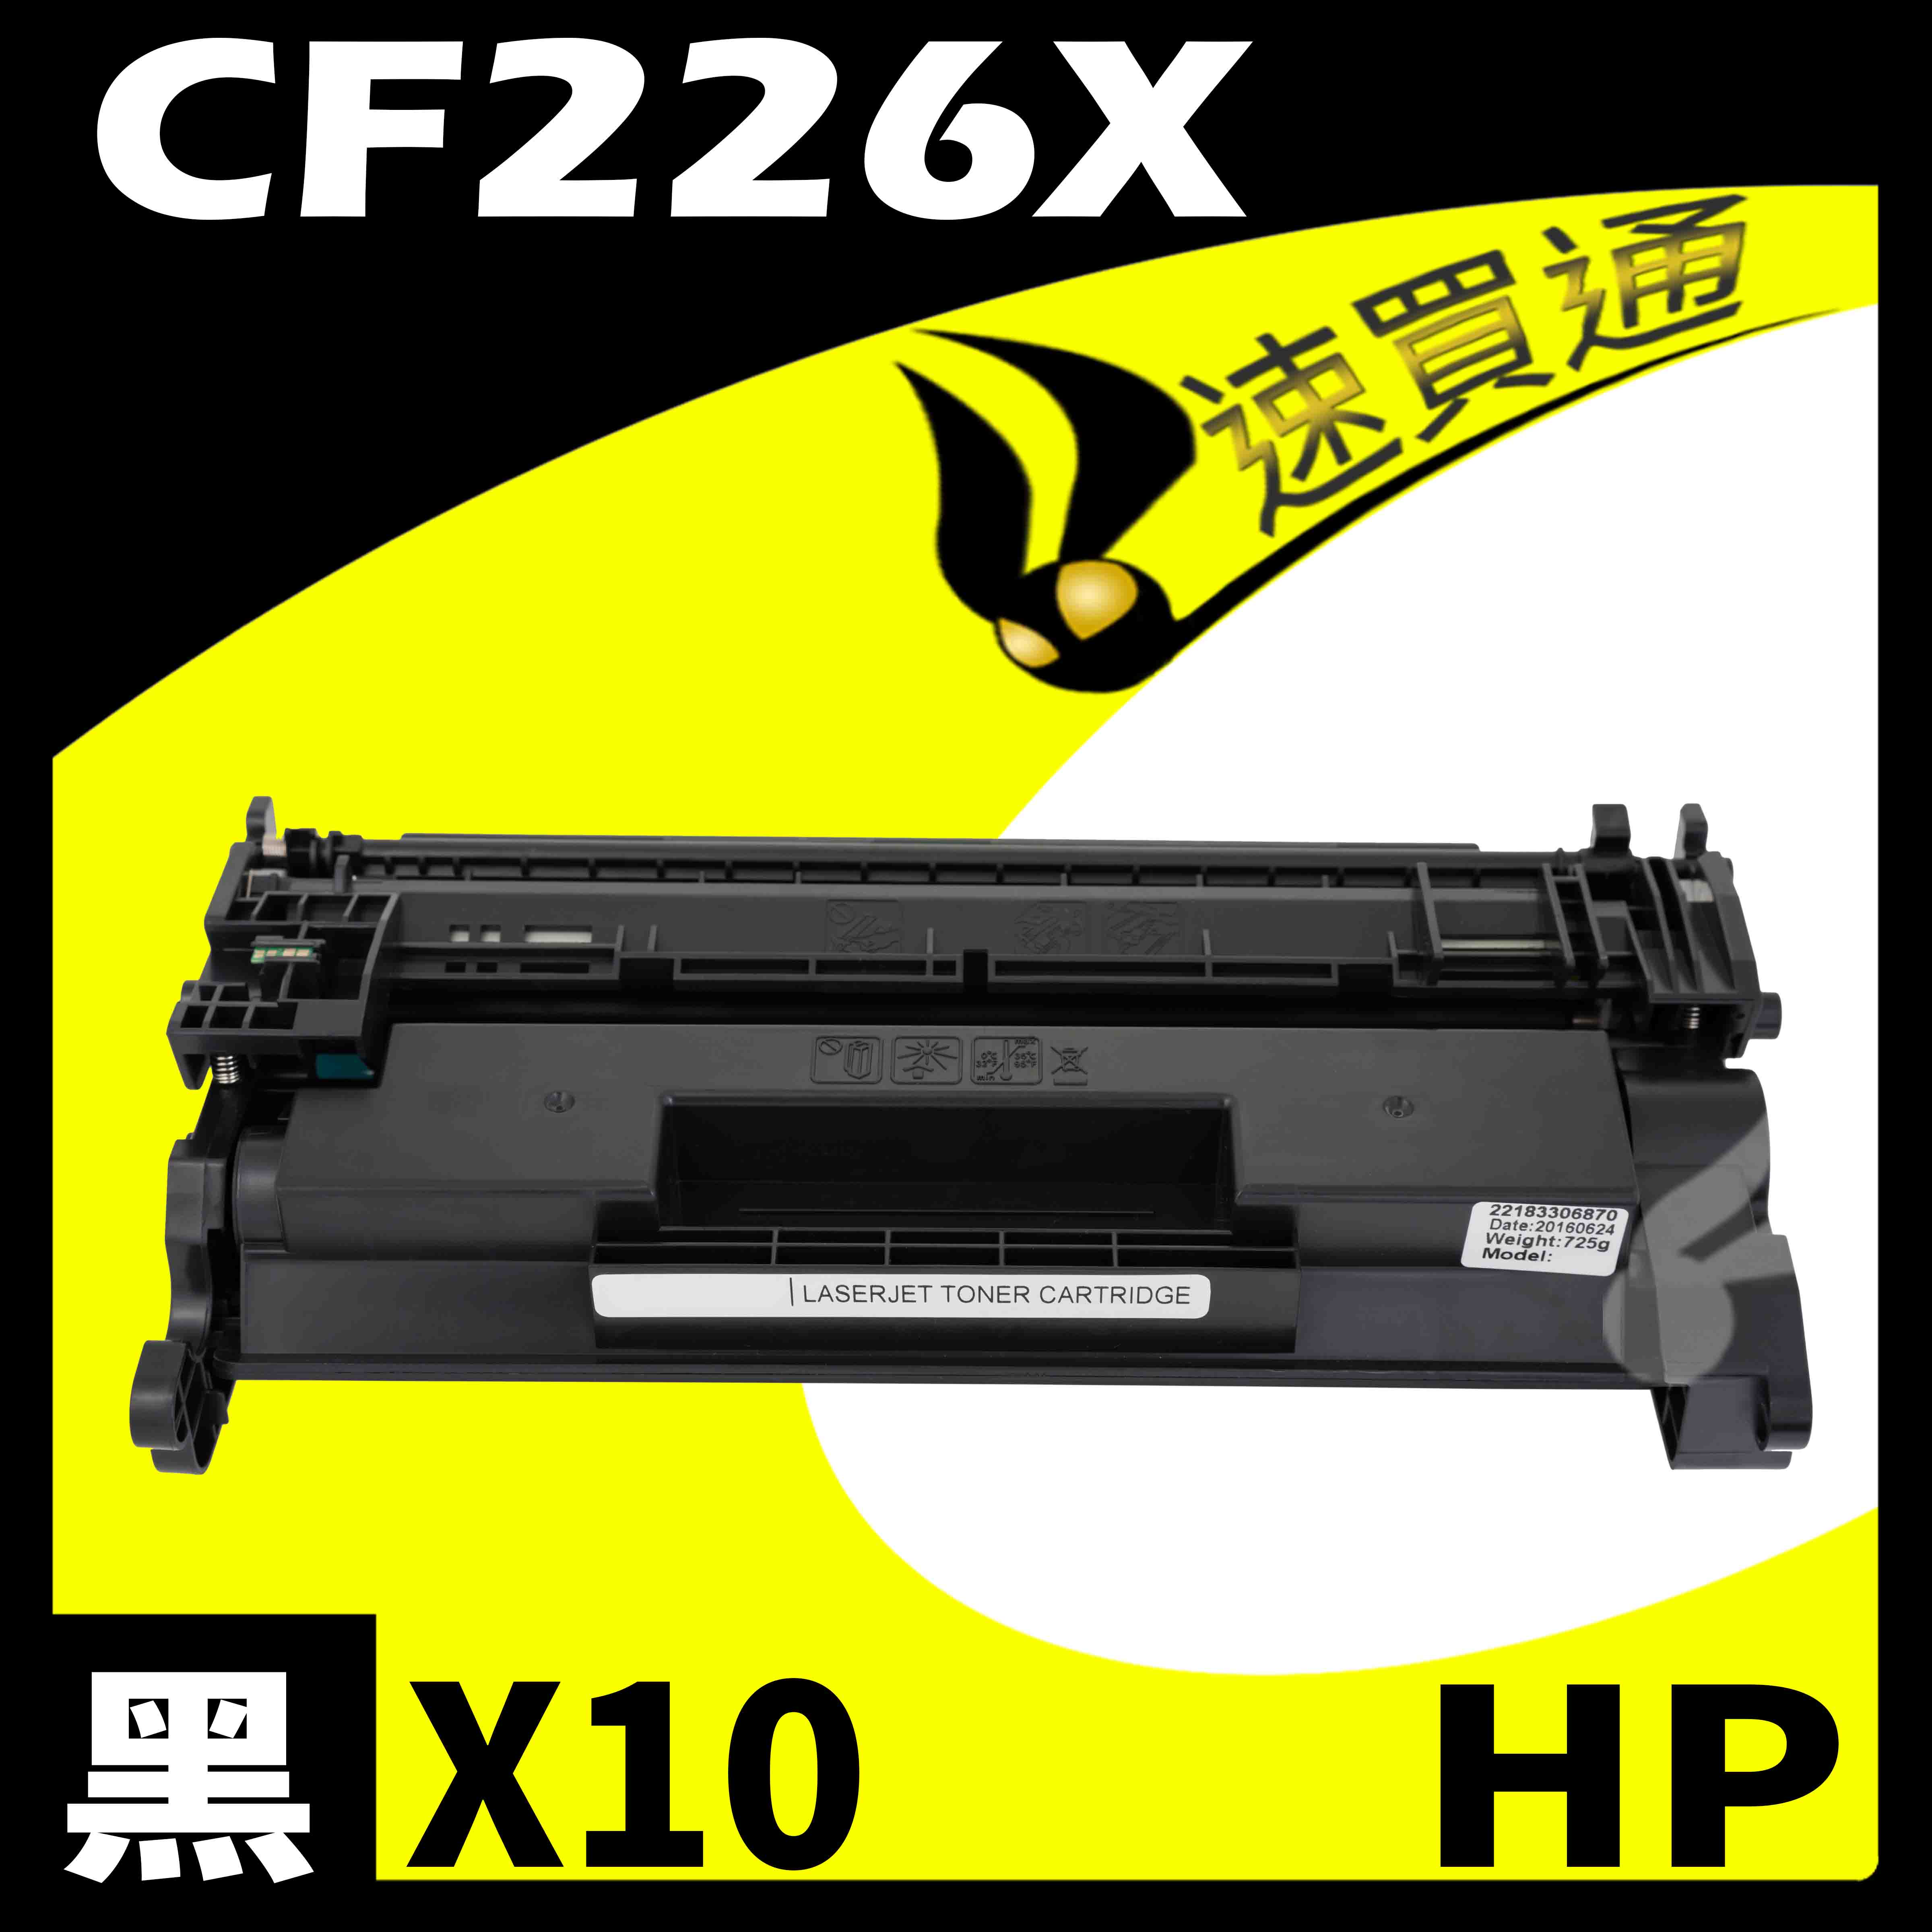 【速買通】超值10件組 HP CF226X 相容碳粉匣